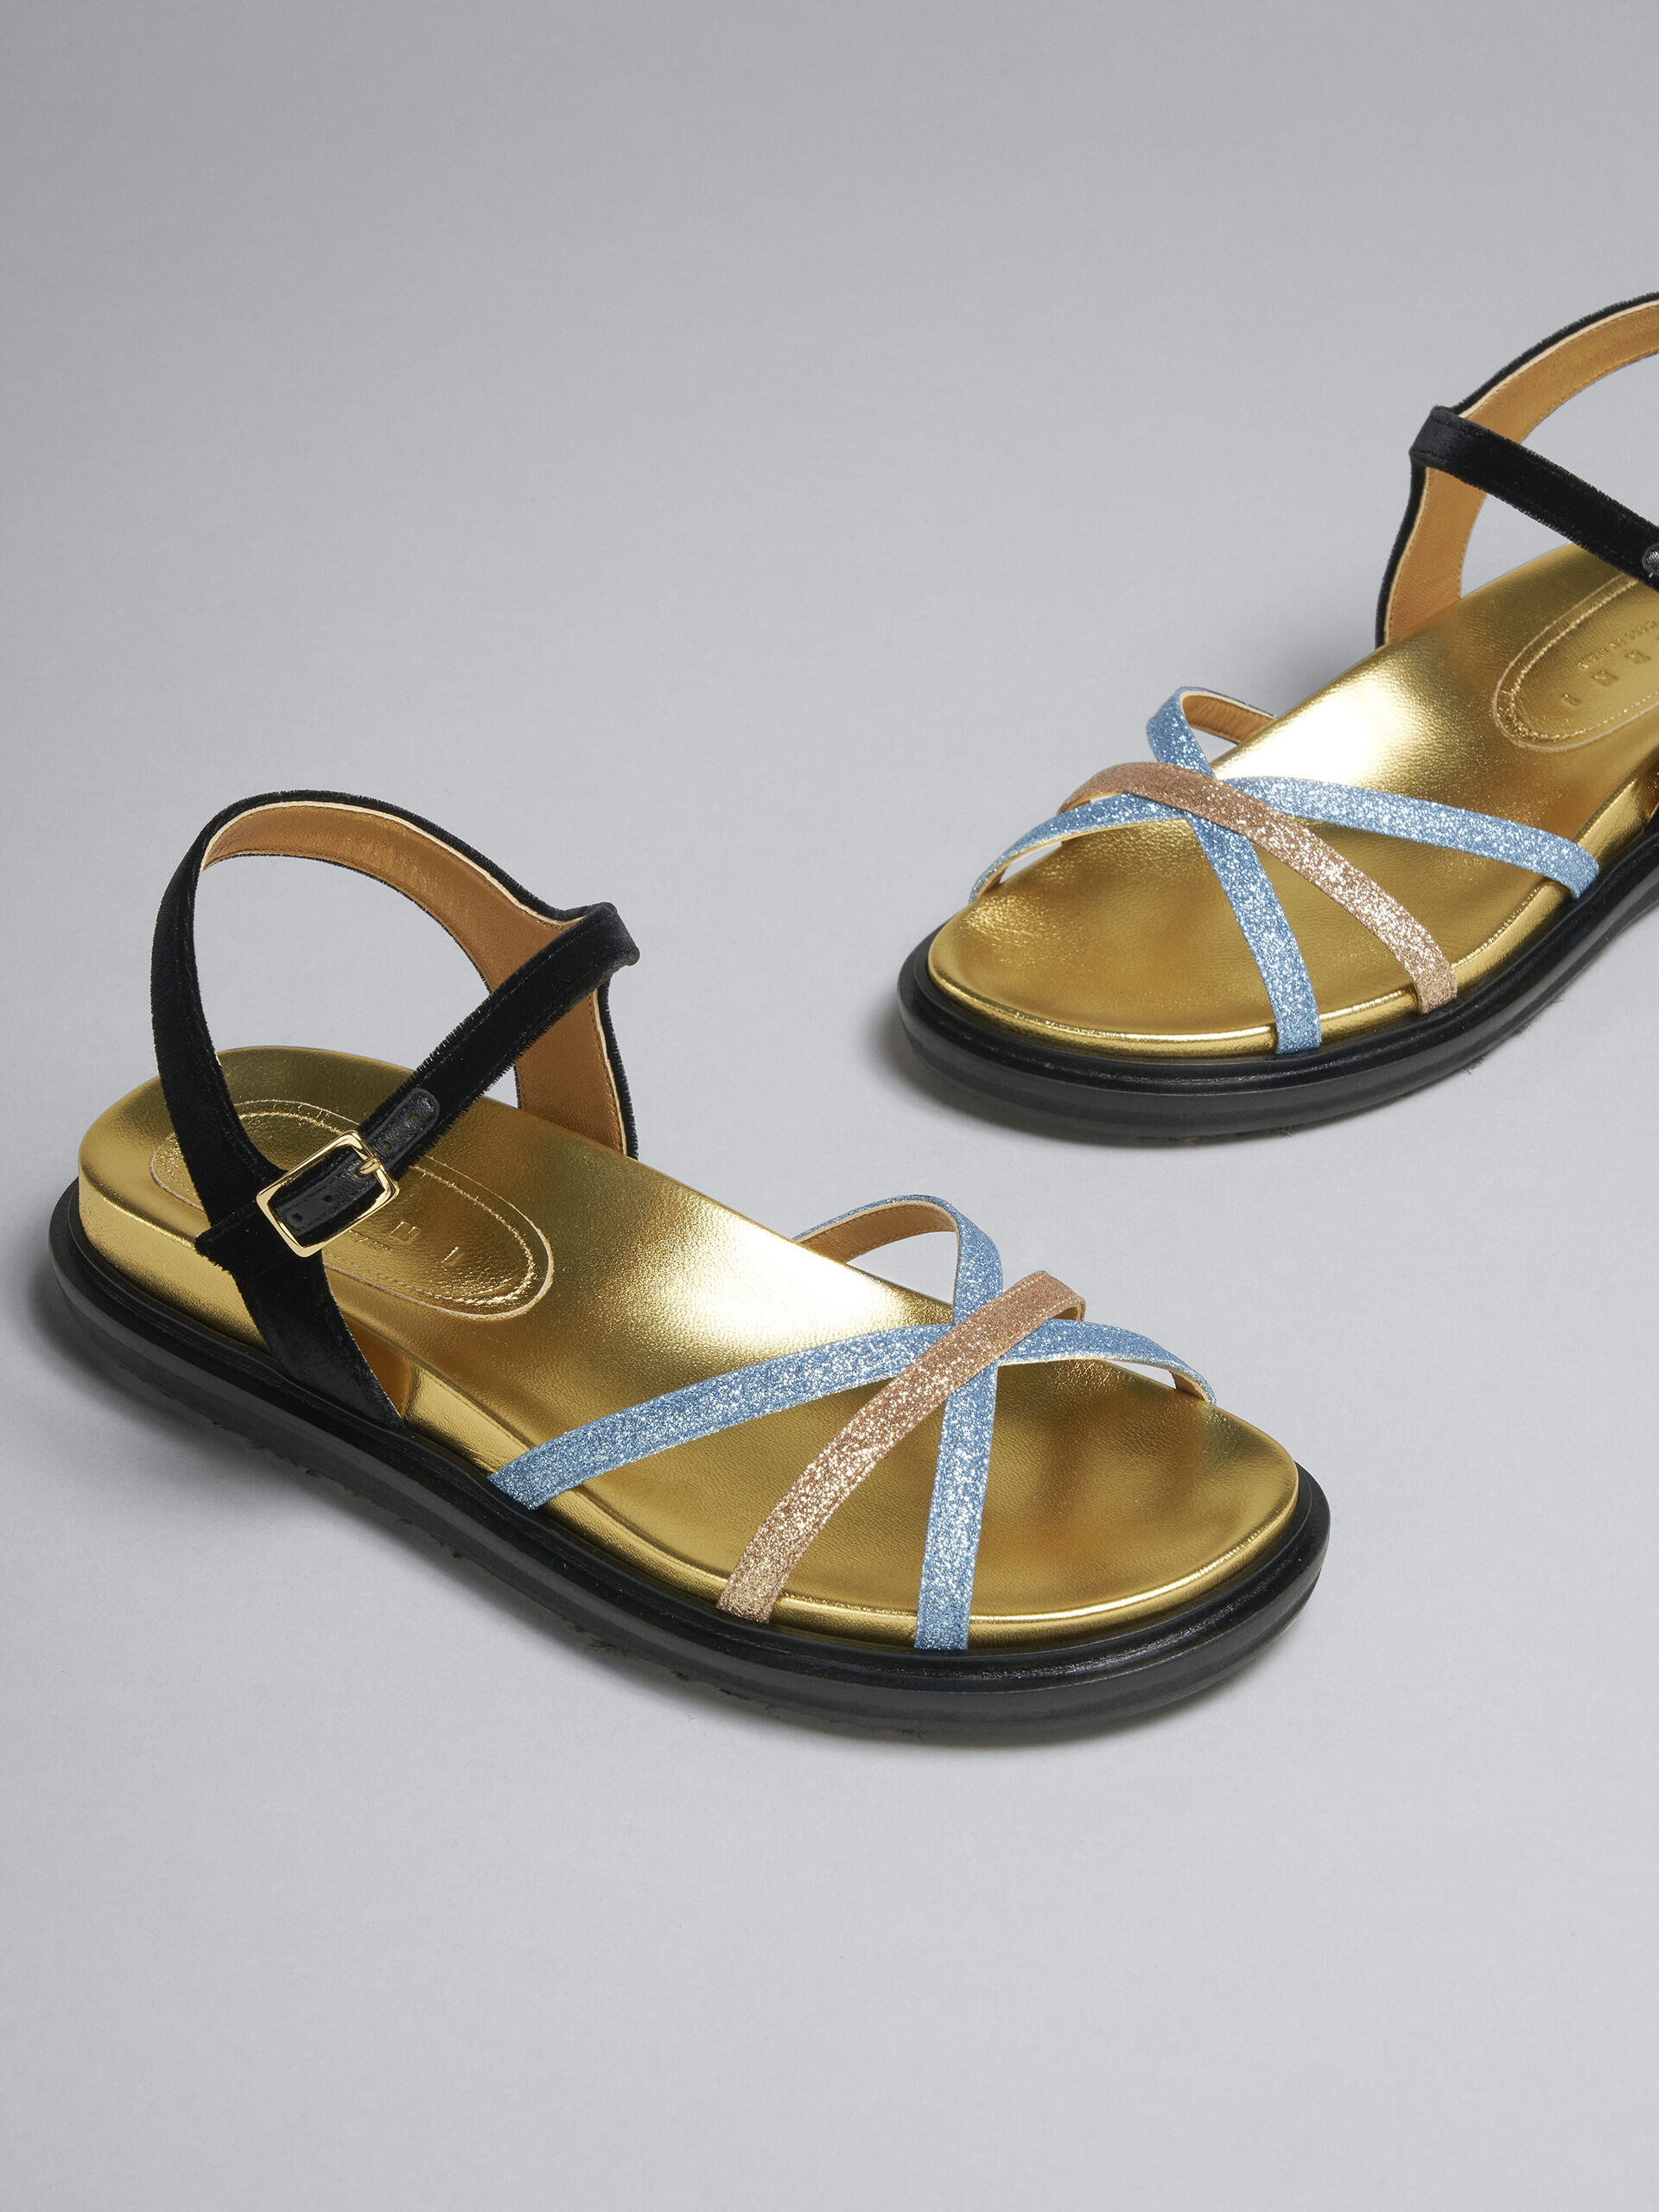 Sandalo Fussbett in tessuto glitter e velluto - Sandali - Image 5